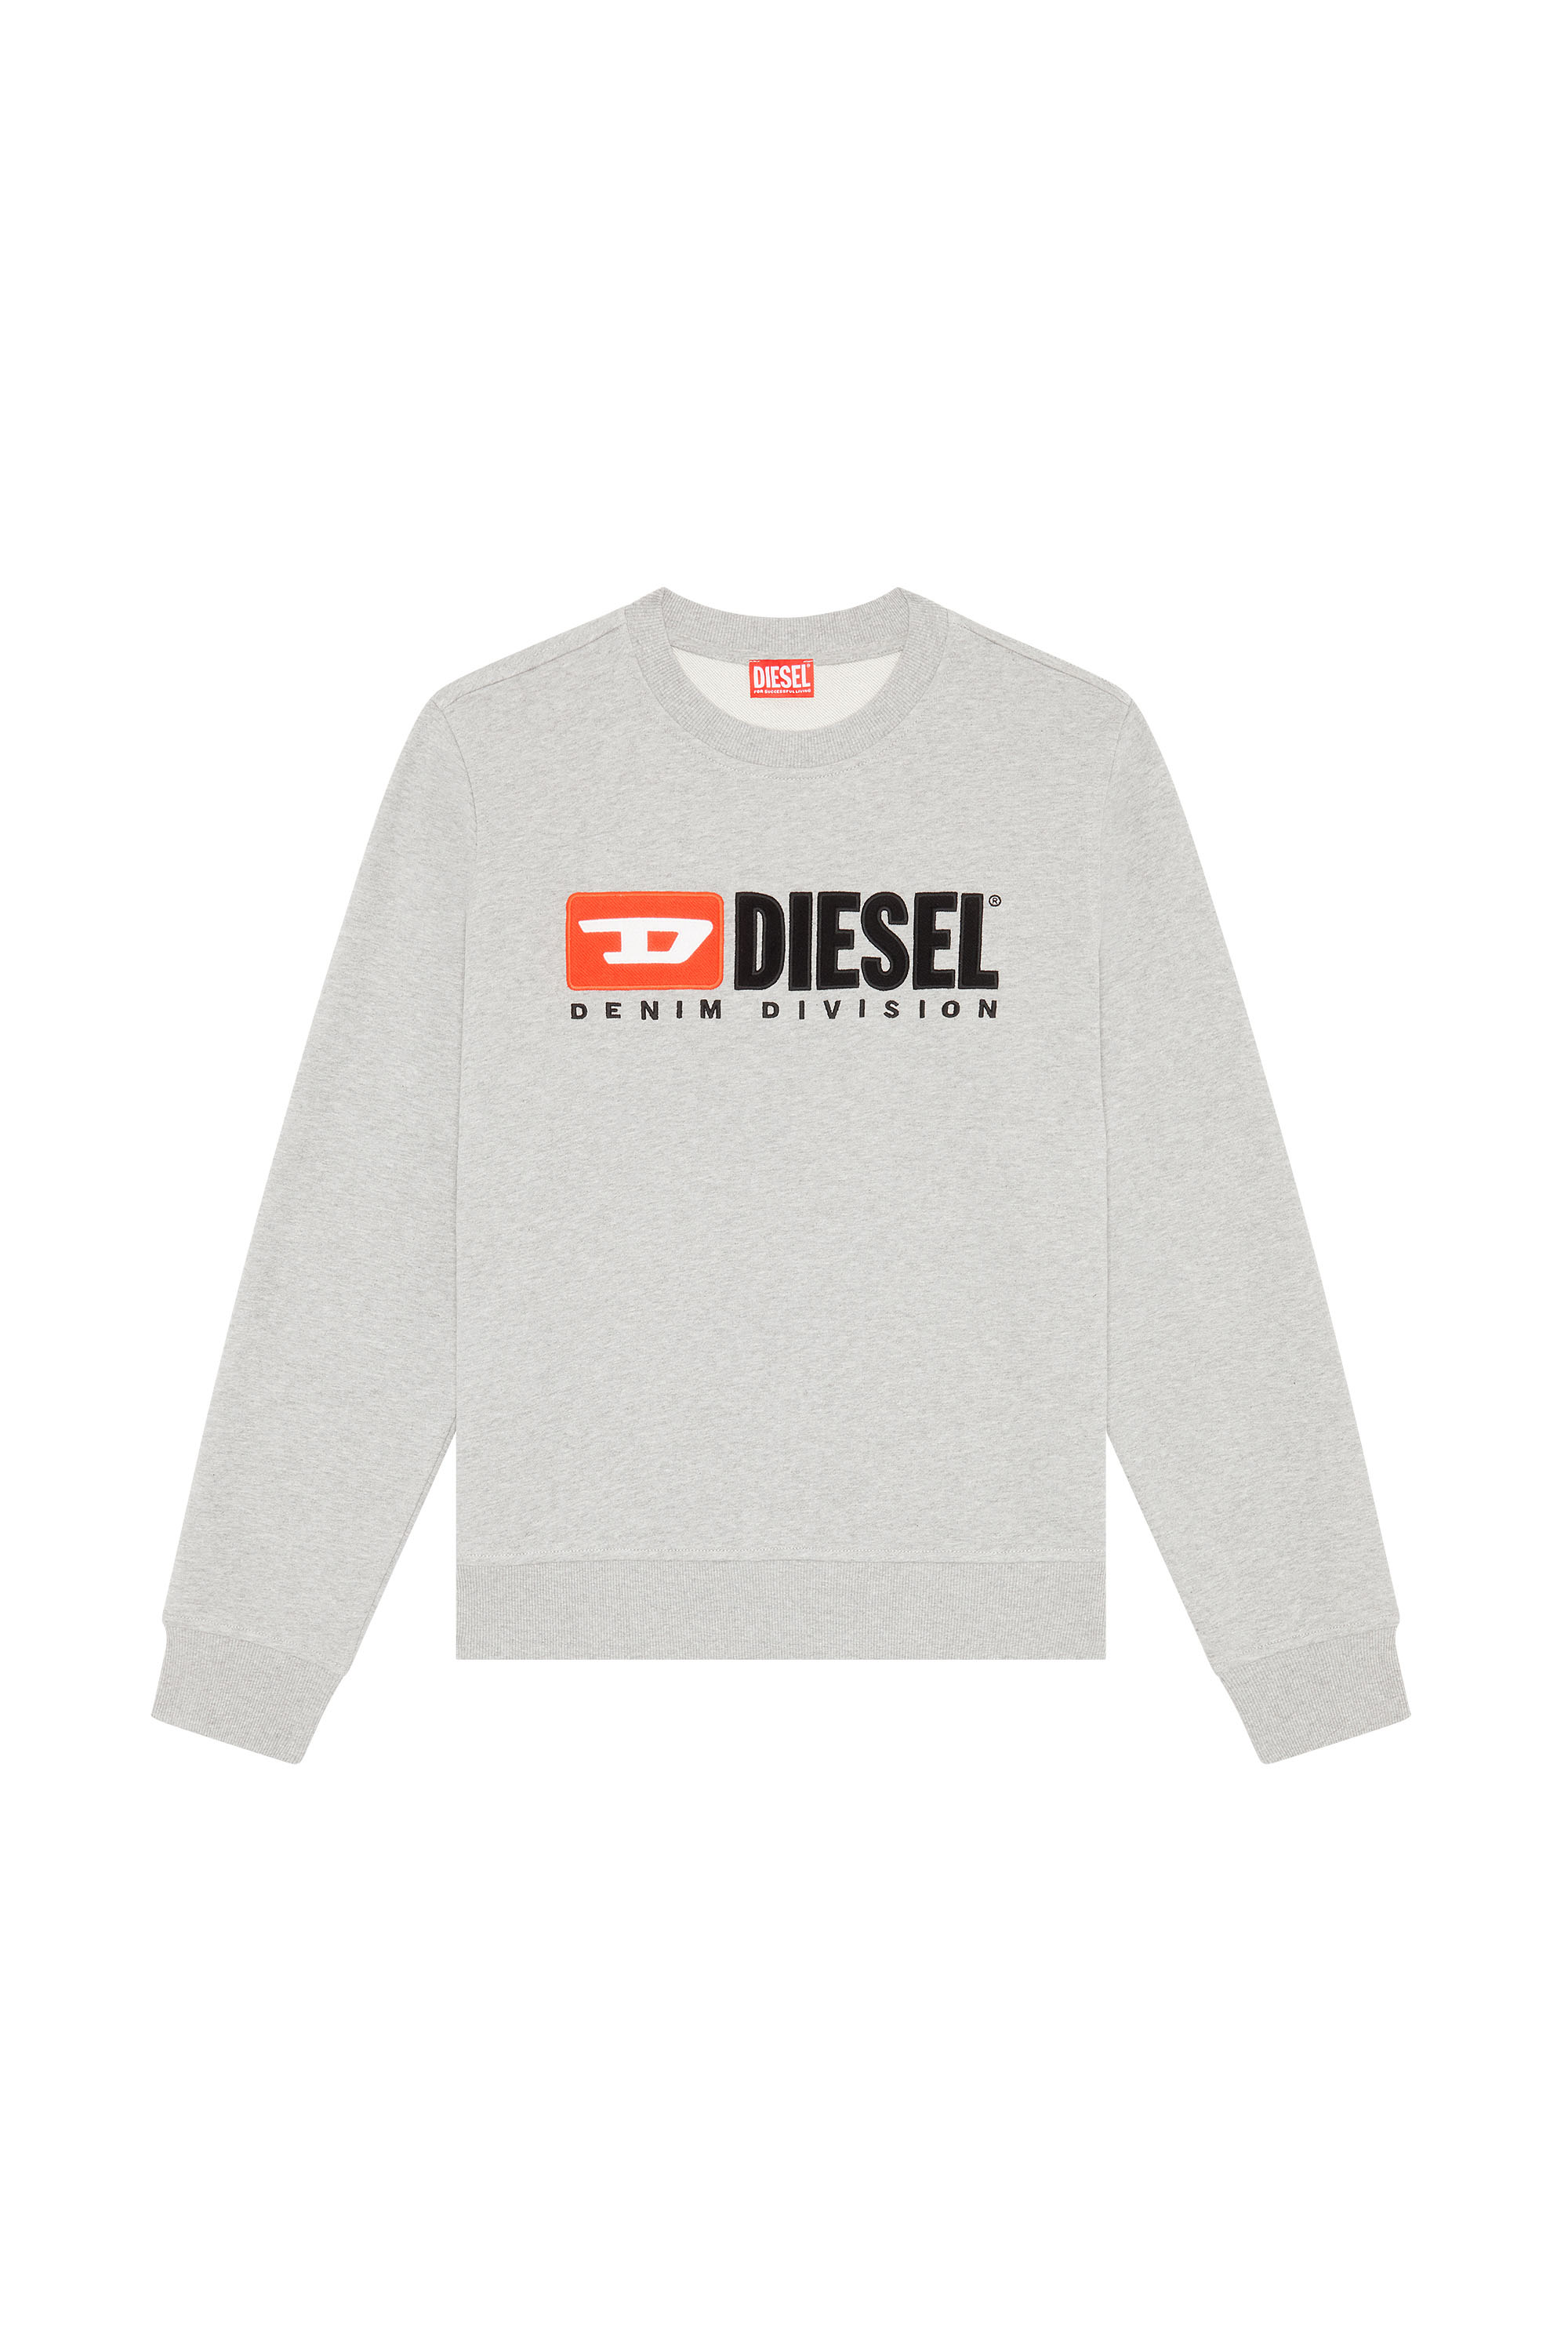 Diesel - S-GINN-DIV, Grau - Image 5